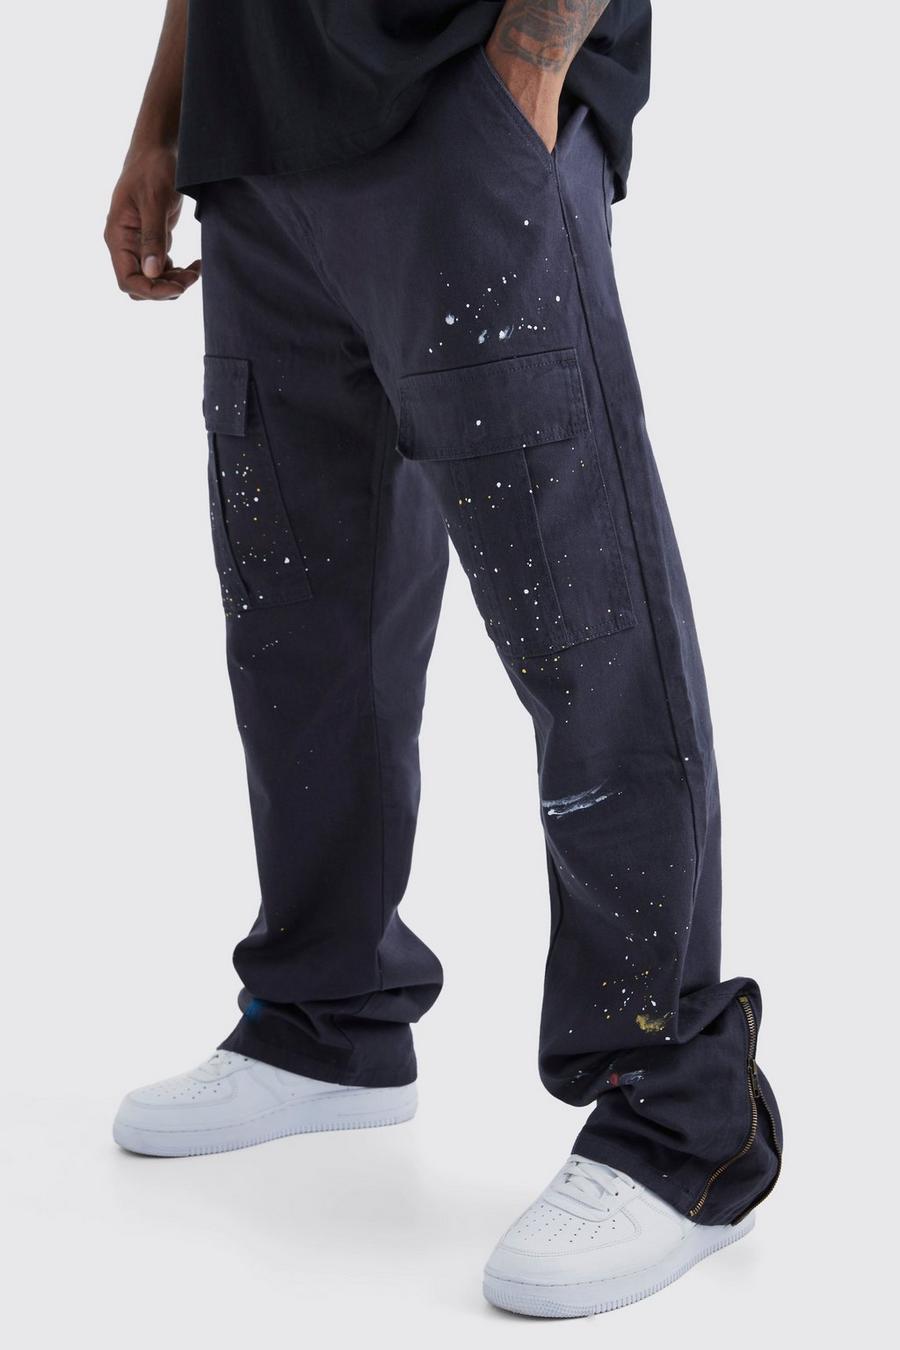 Grande taille - Pantalon cargo zippé à taches de peinture, Charcoal